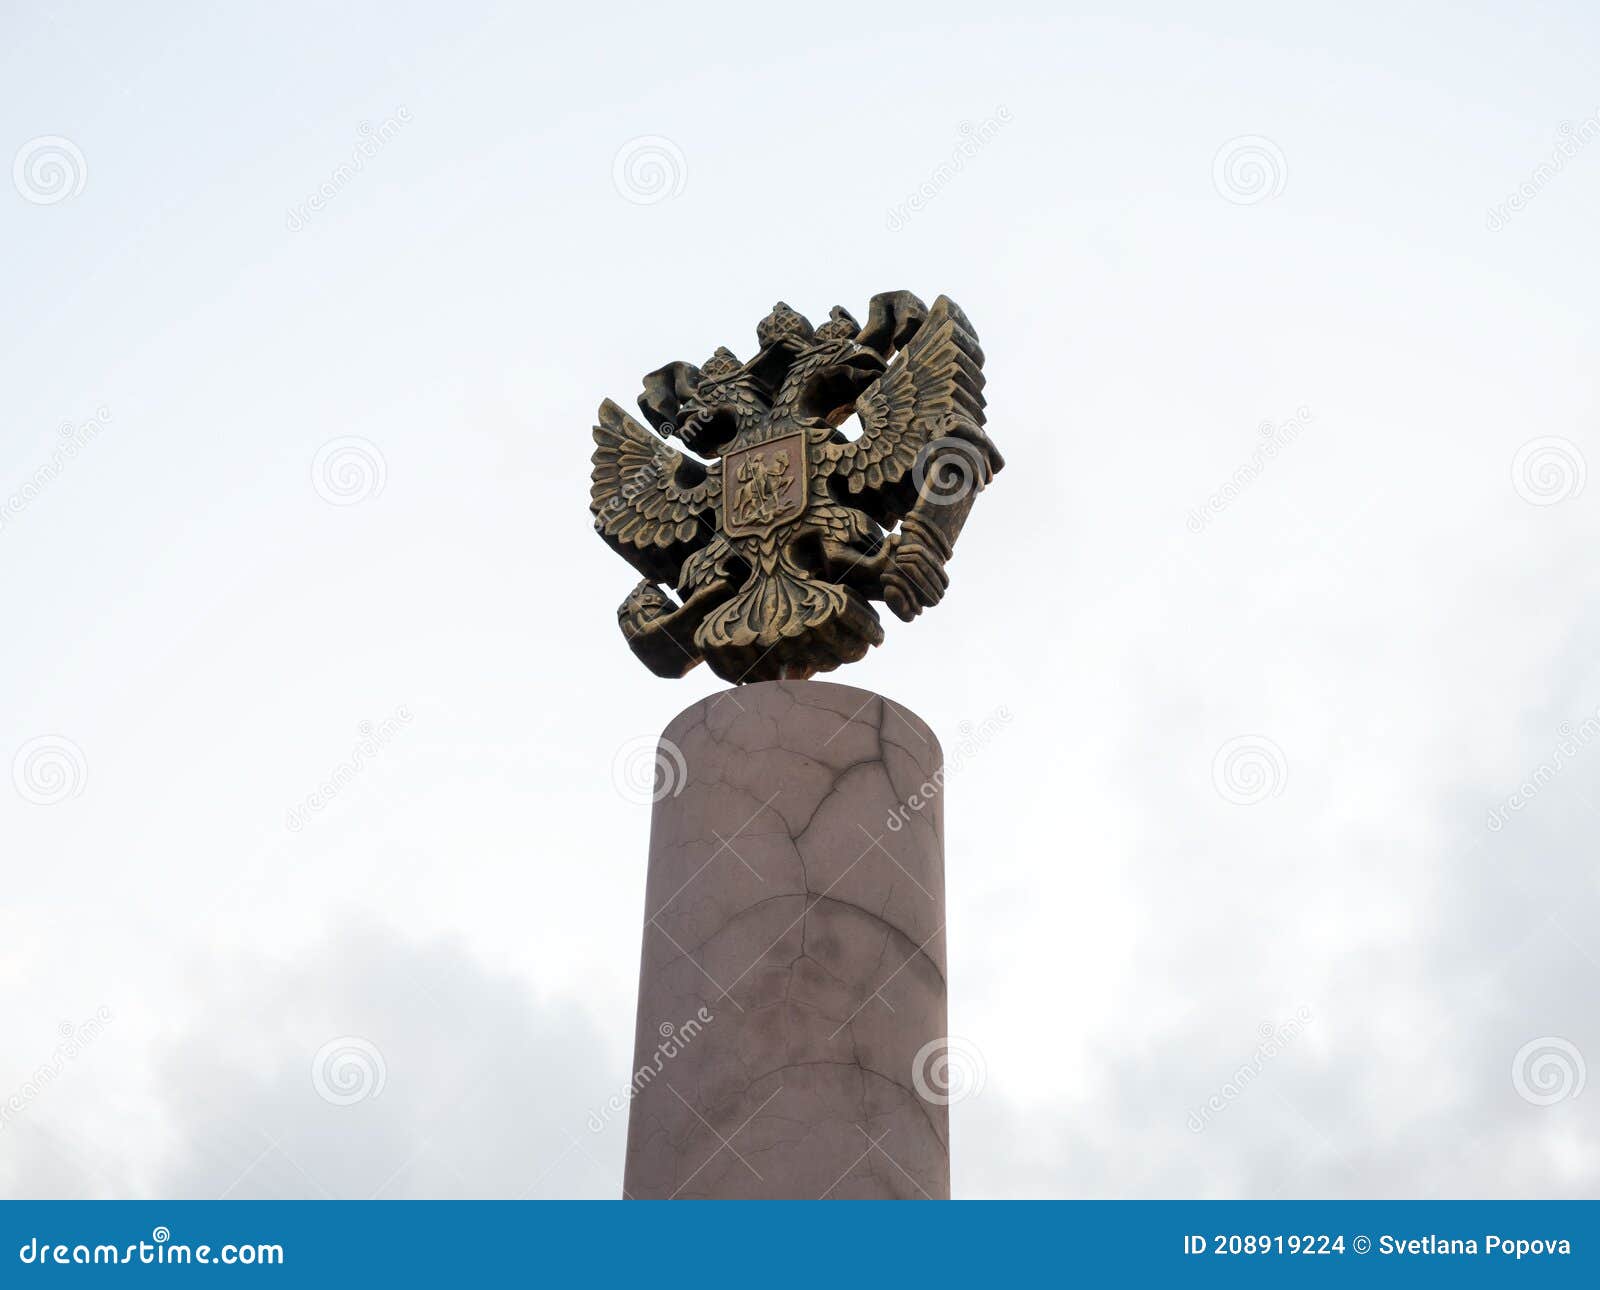 το εθνόσημο της ρωσίας είναι το επίσημο κρατικό σύμβολο της ρωσικής ομοσπονδίας που έχει ρίξει το χάλκινο στην κορυφή του πυλώνα.